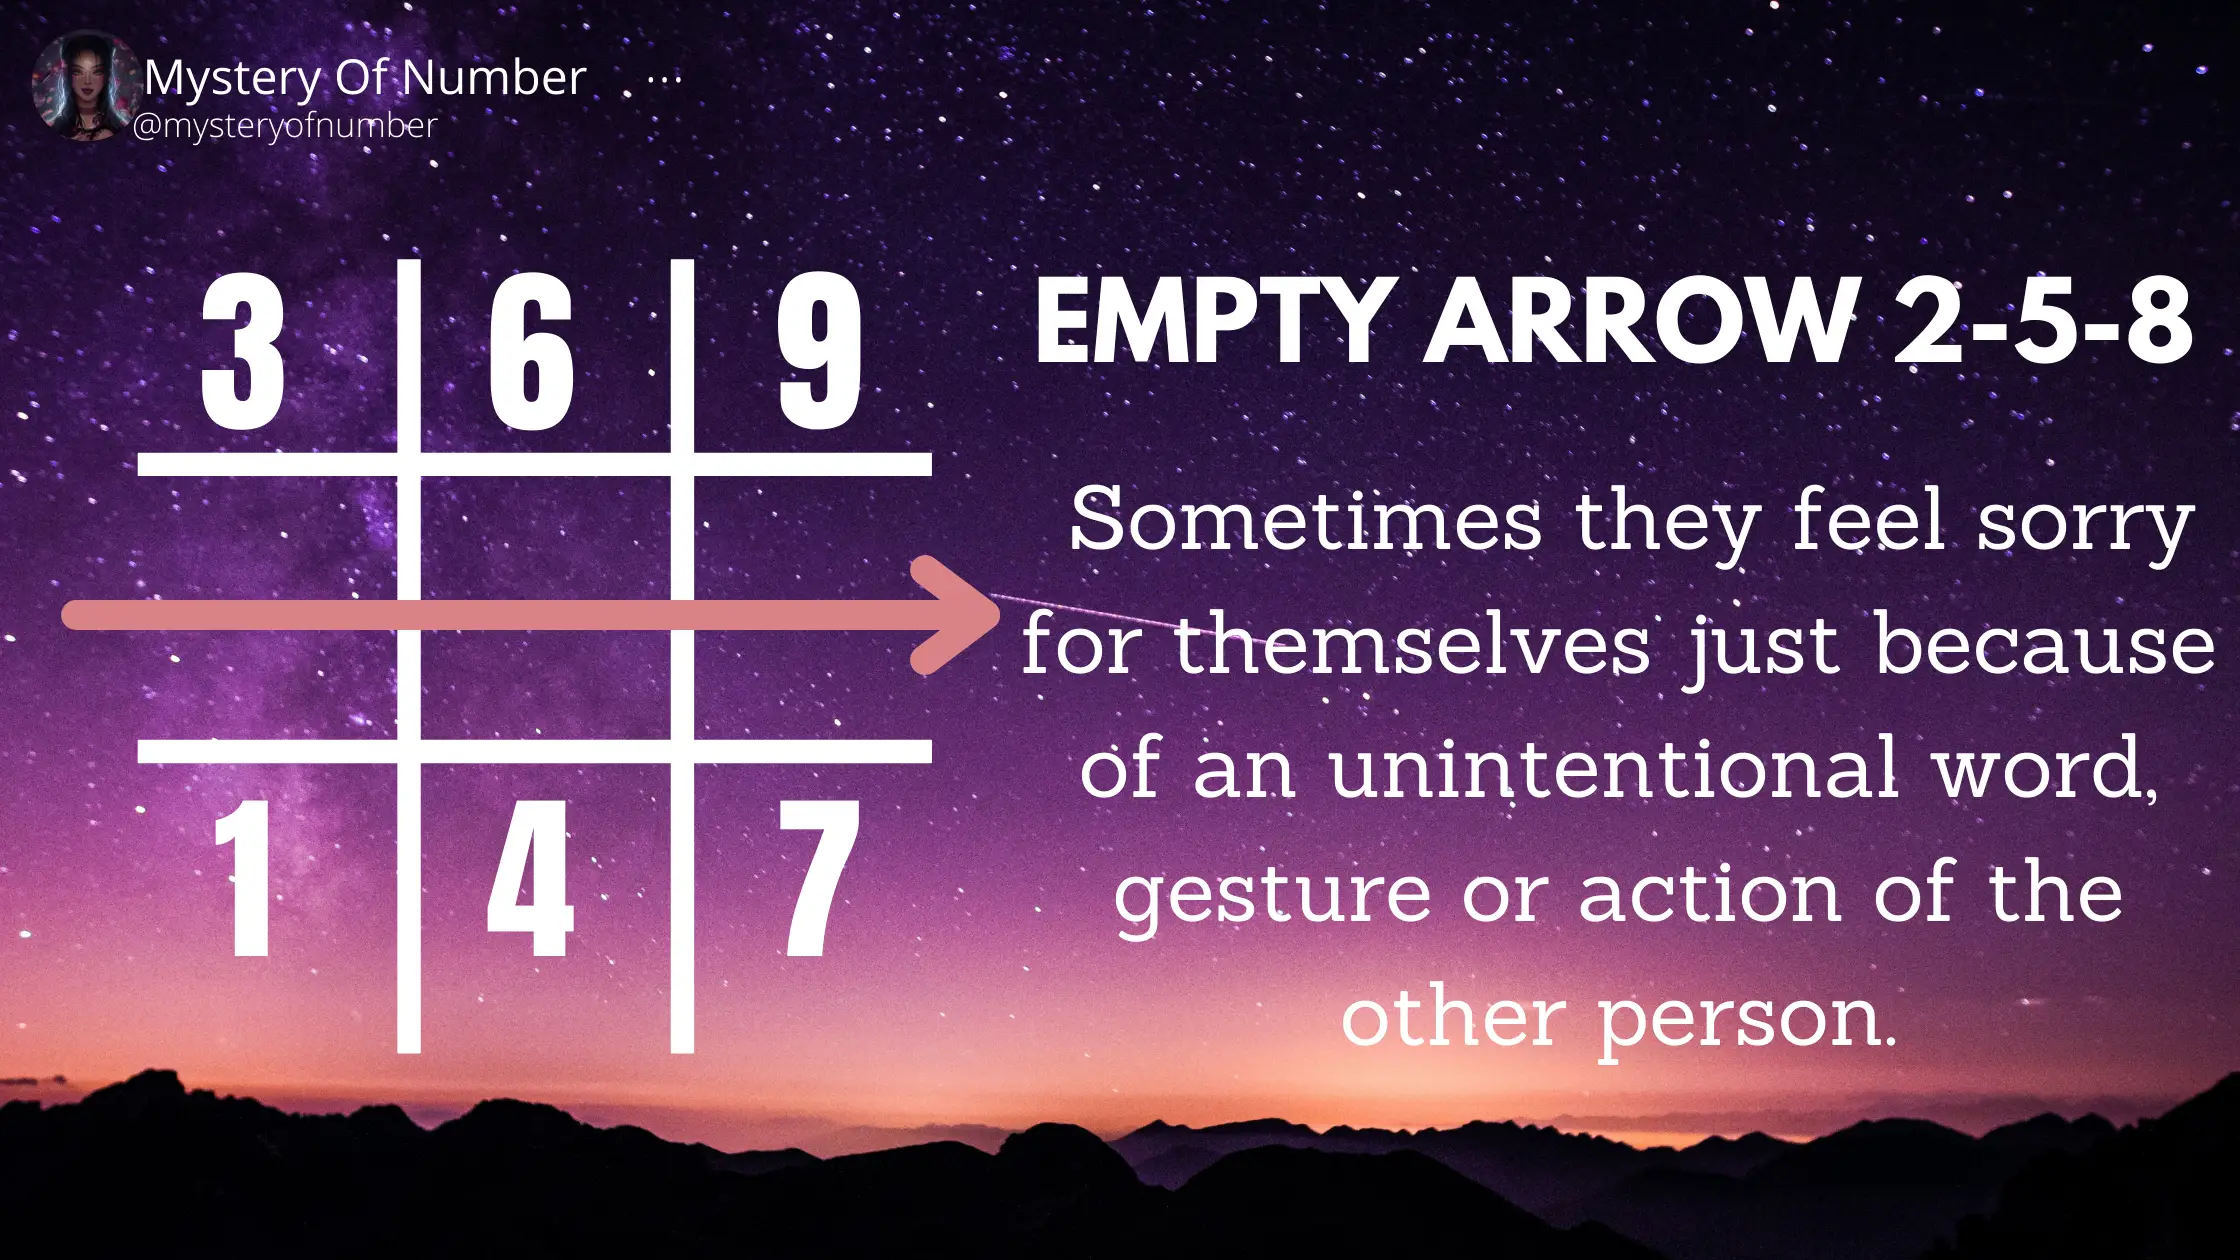 Empty arrow 2-5-8: Empty arrows in numerology